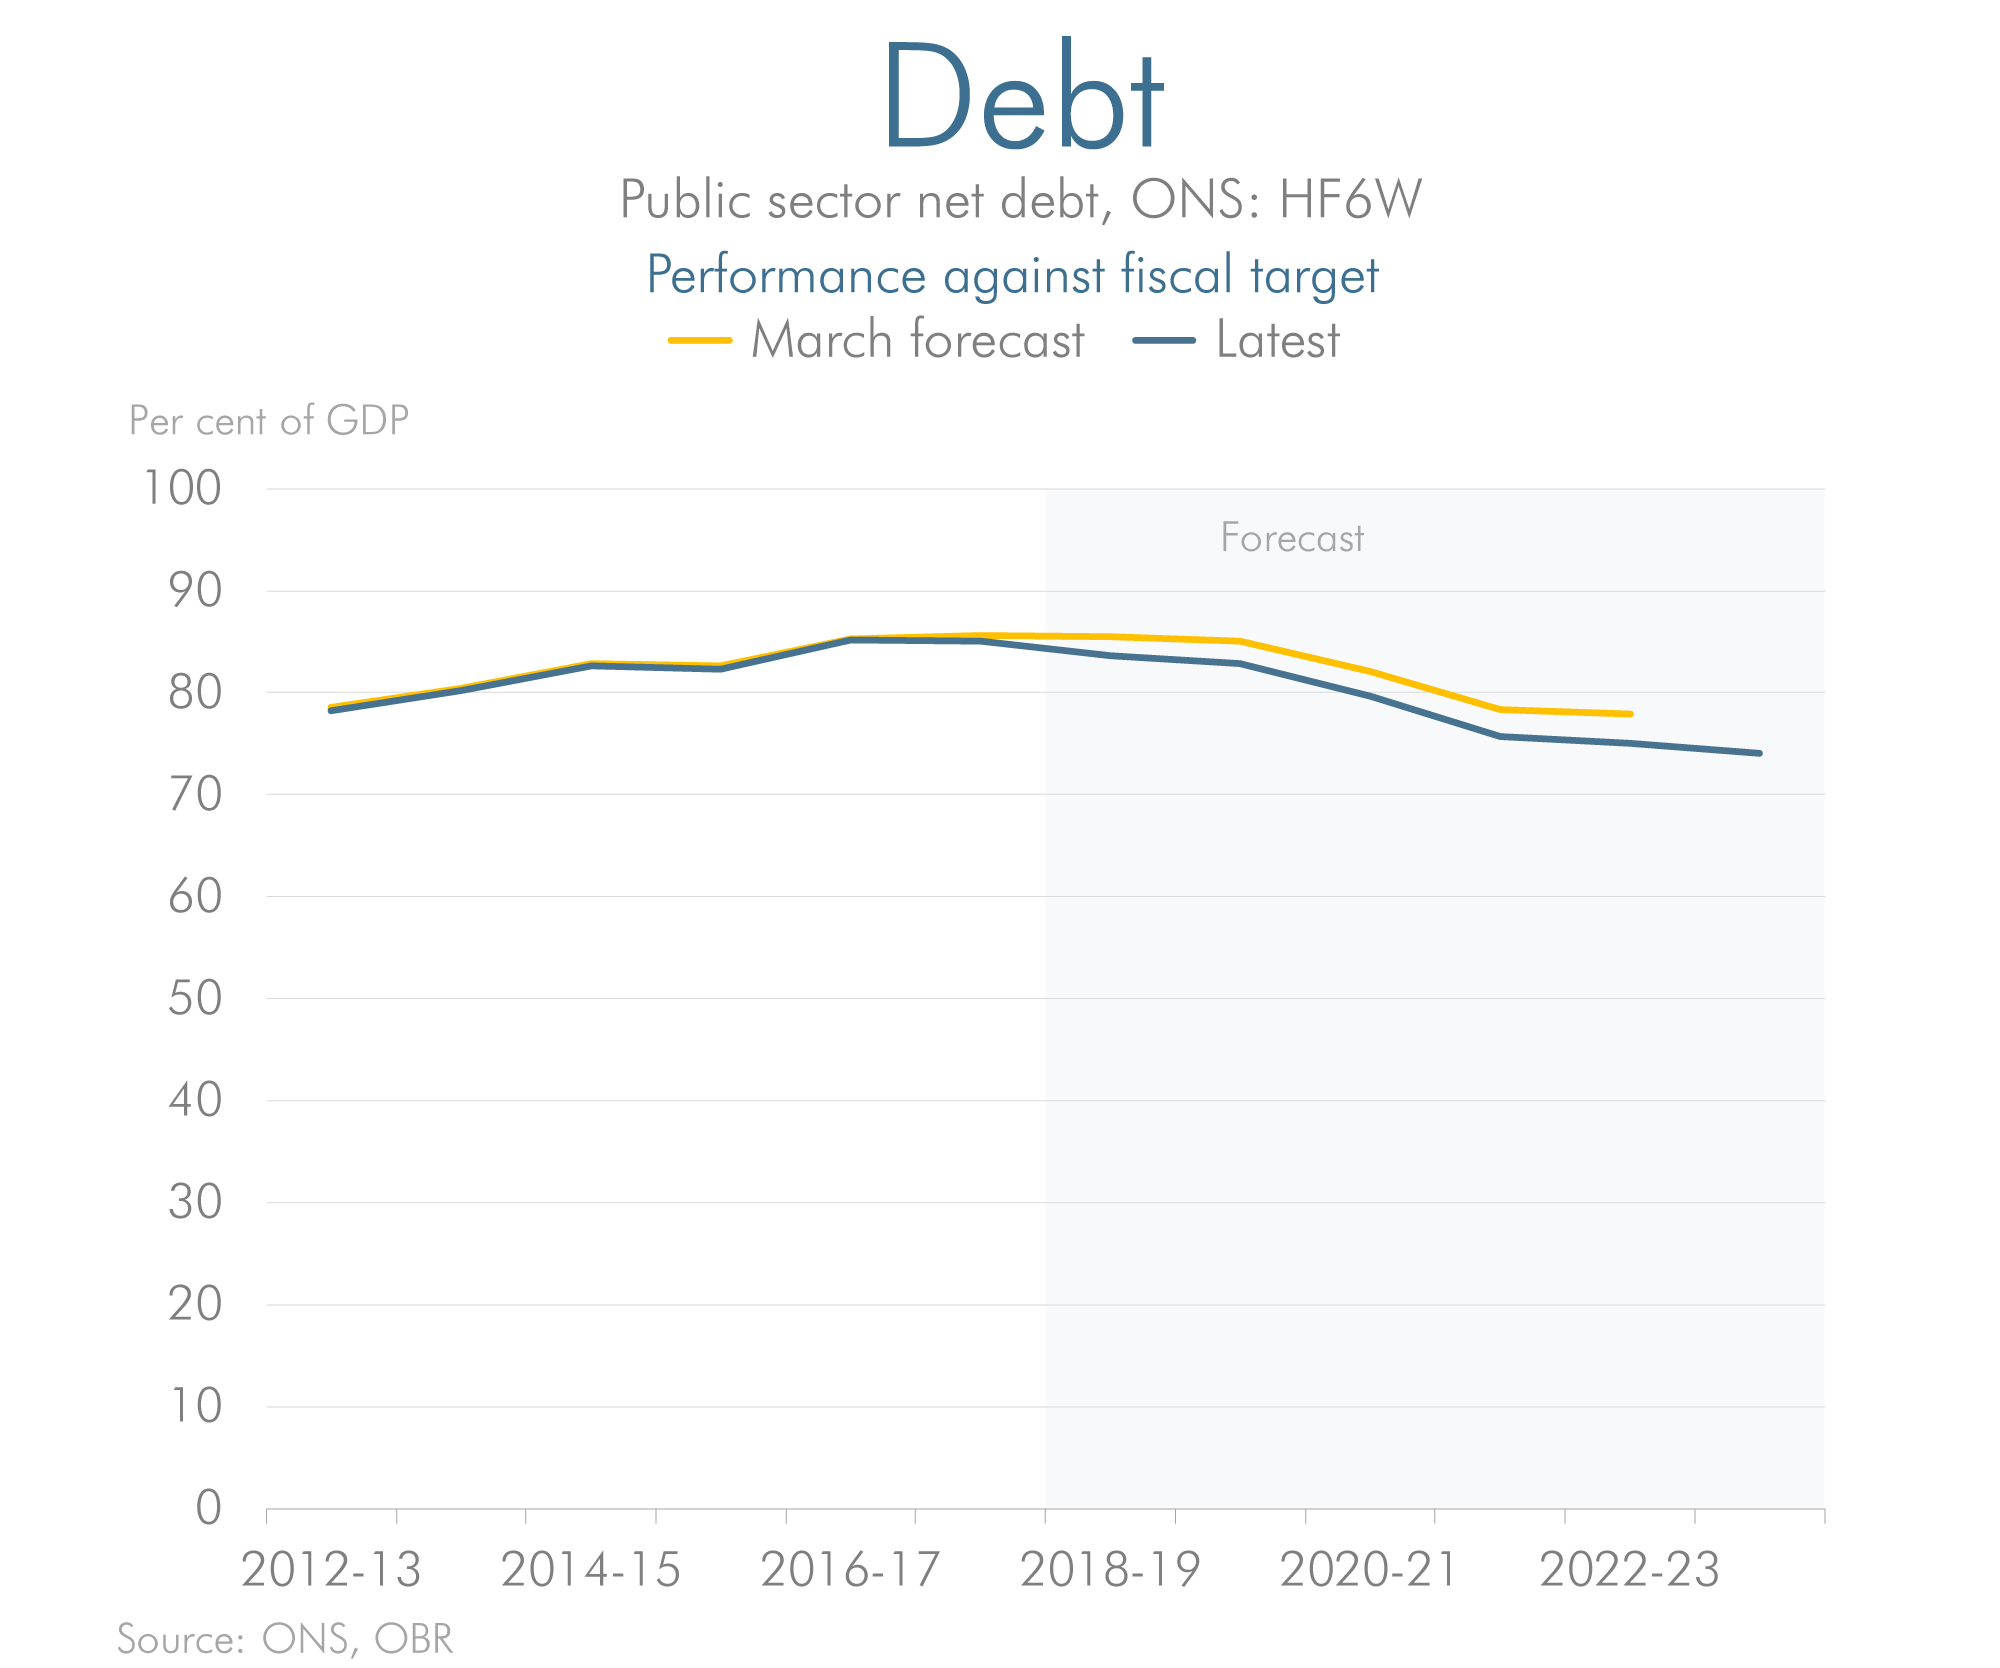 Latest forecast versus previous forecast for debt